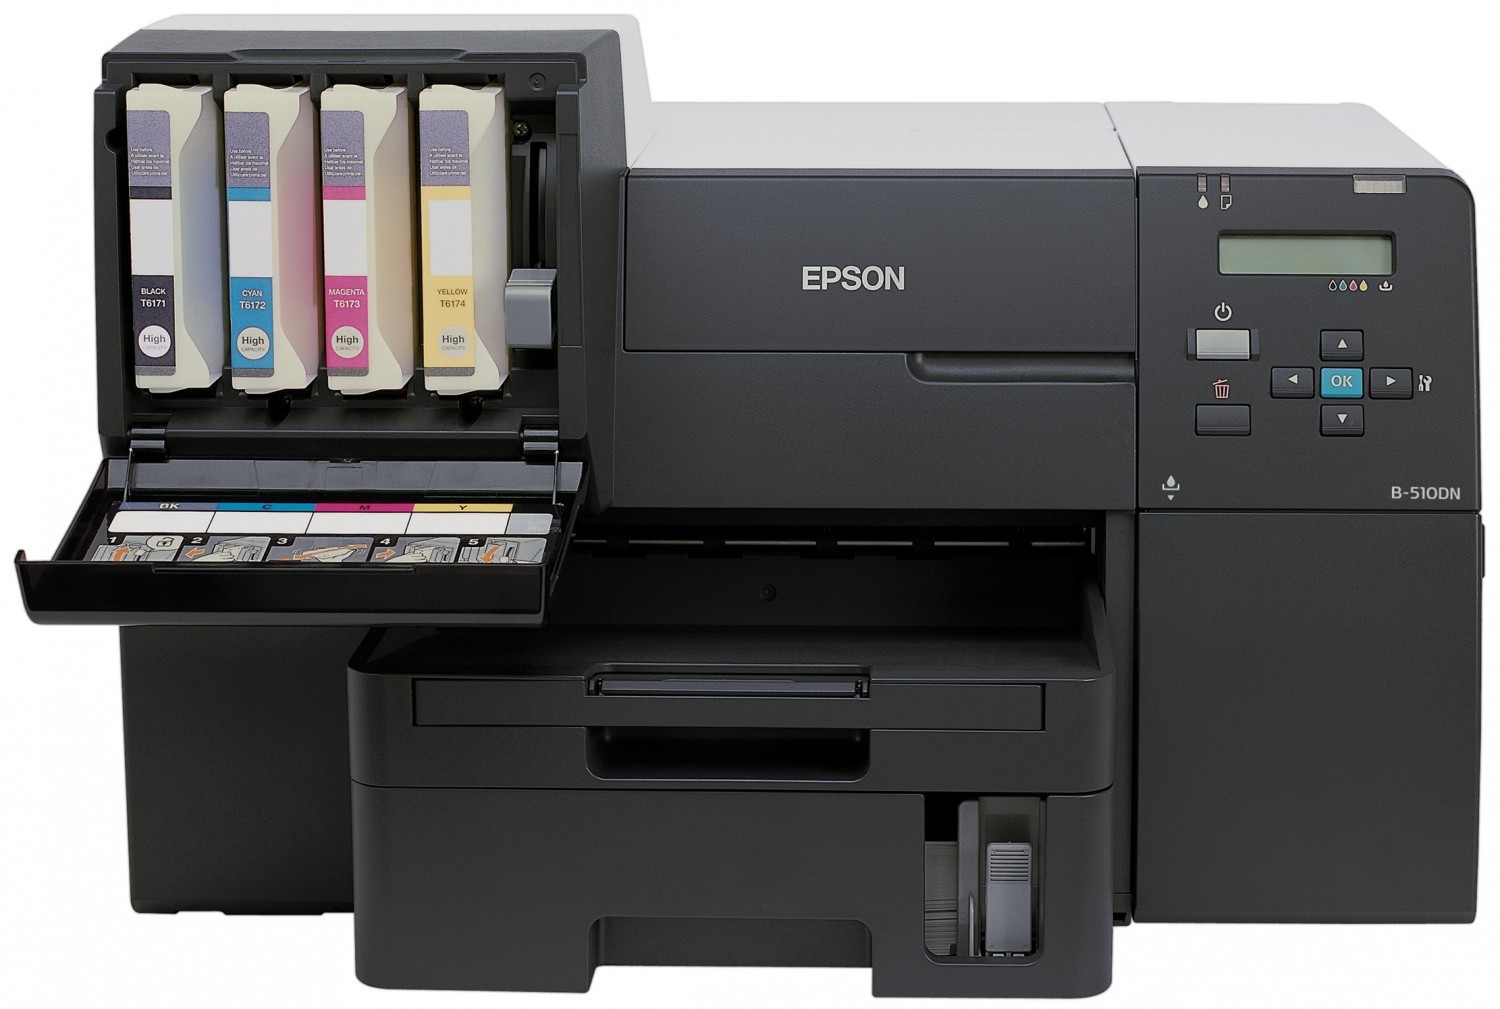 Epson series. Принтер Epson b-310n. Epson b-510dn. Epson b300. Принтер Epson b-300.